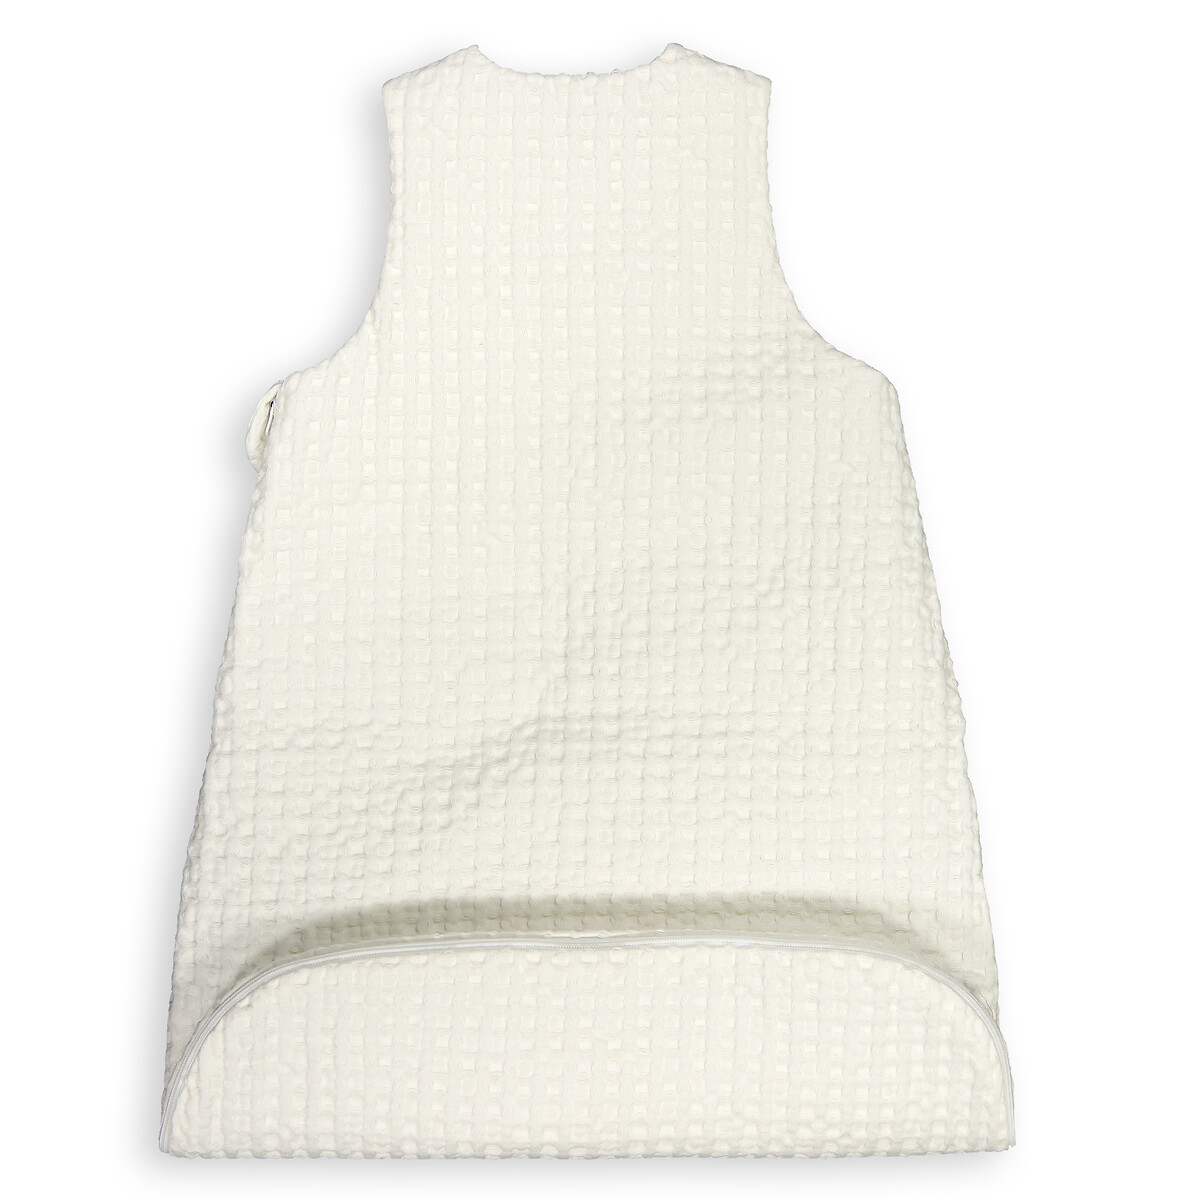 Конверт Для новорожденного с эффектом вафельной ткани 2 года - 86 см белый LaRedoute, размер 2 года - 86 см - фото 4